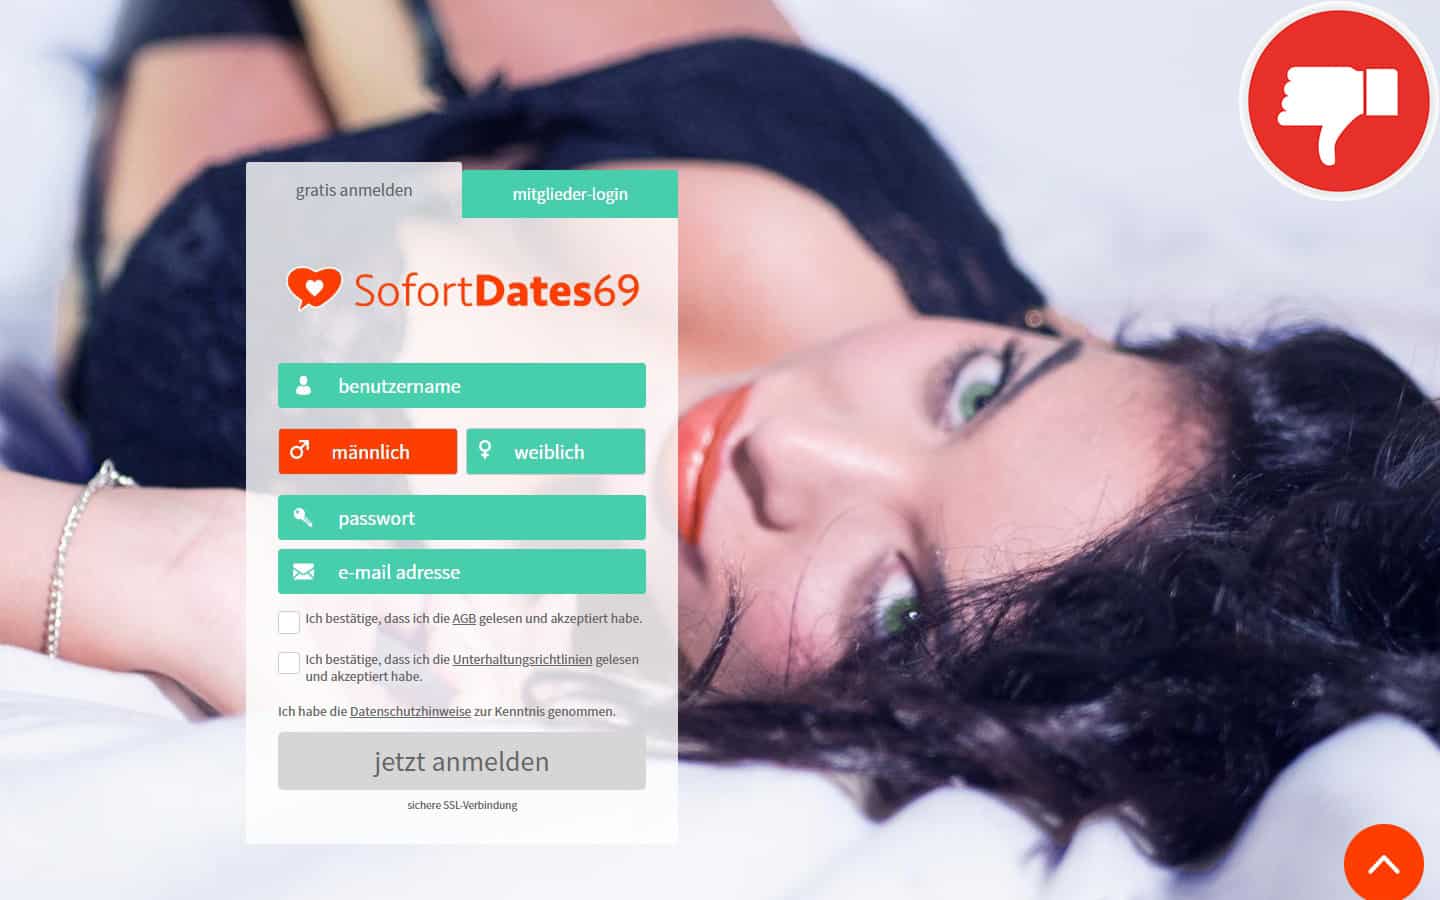 Fakeprofile auf dating seiten